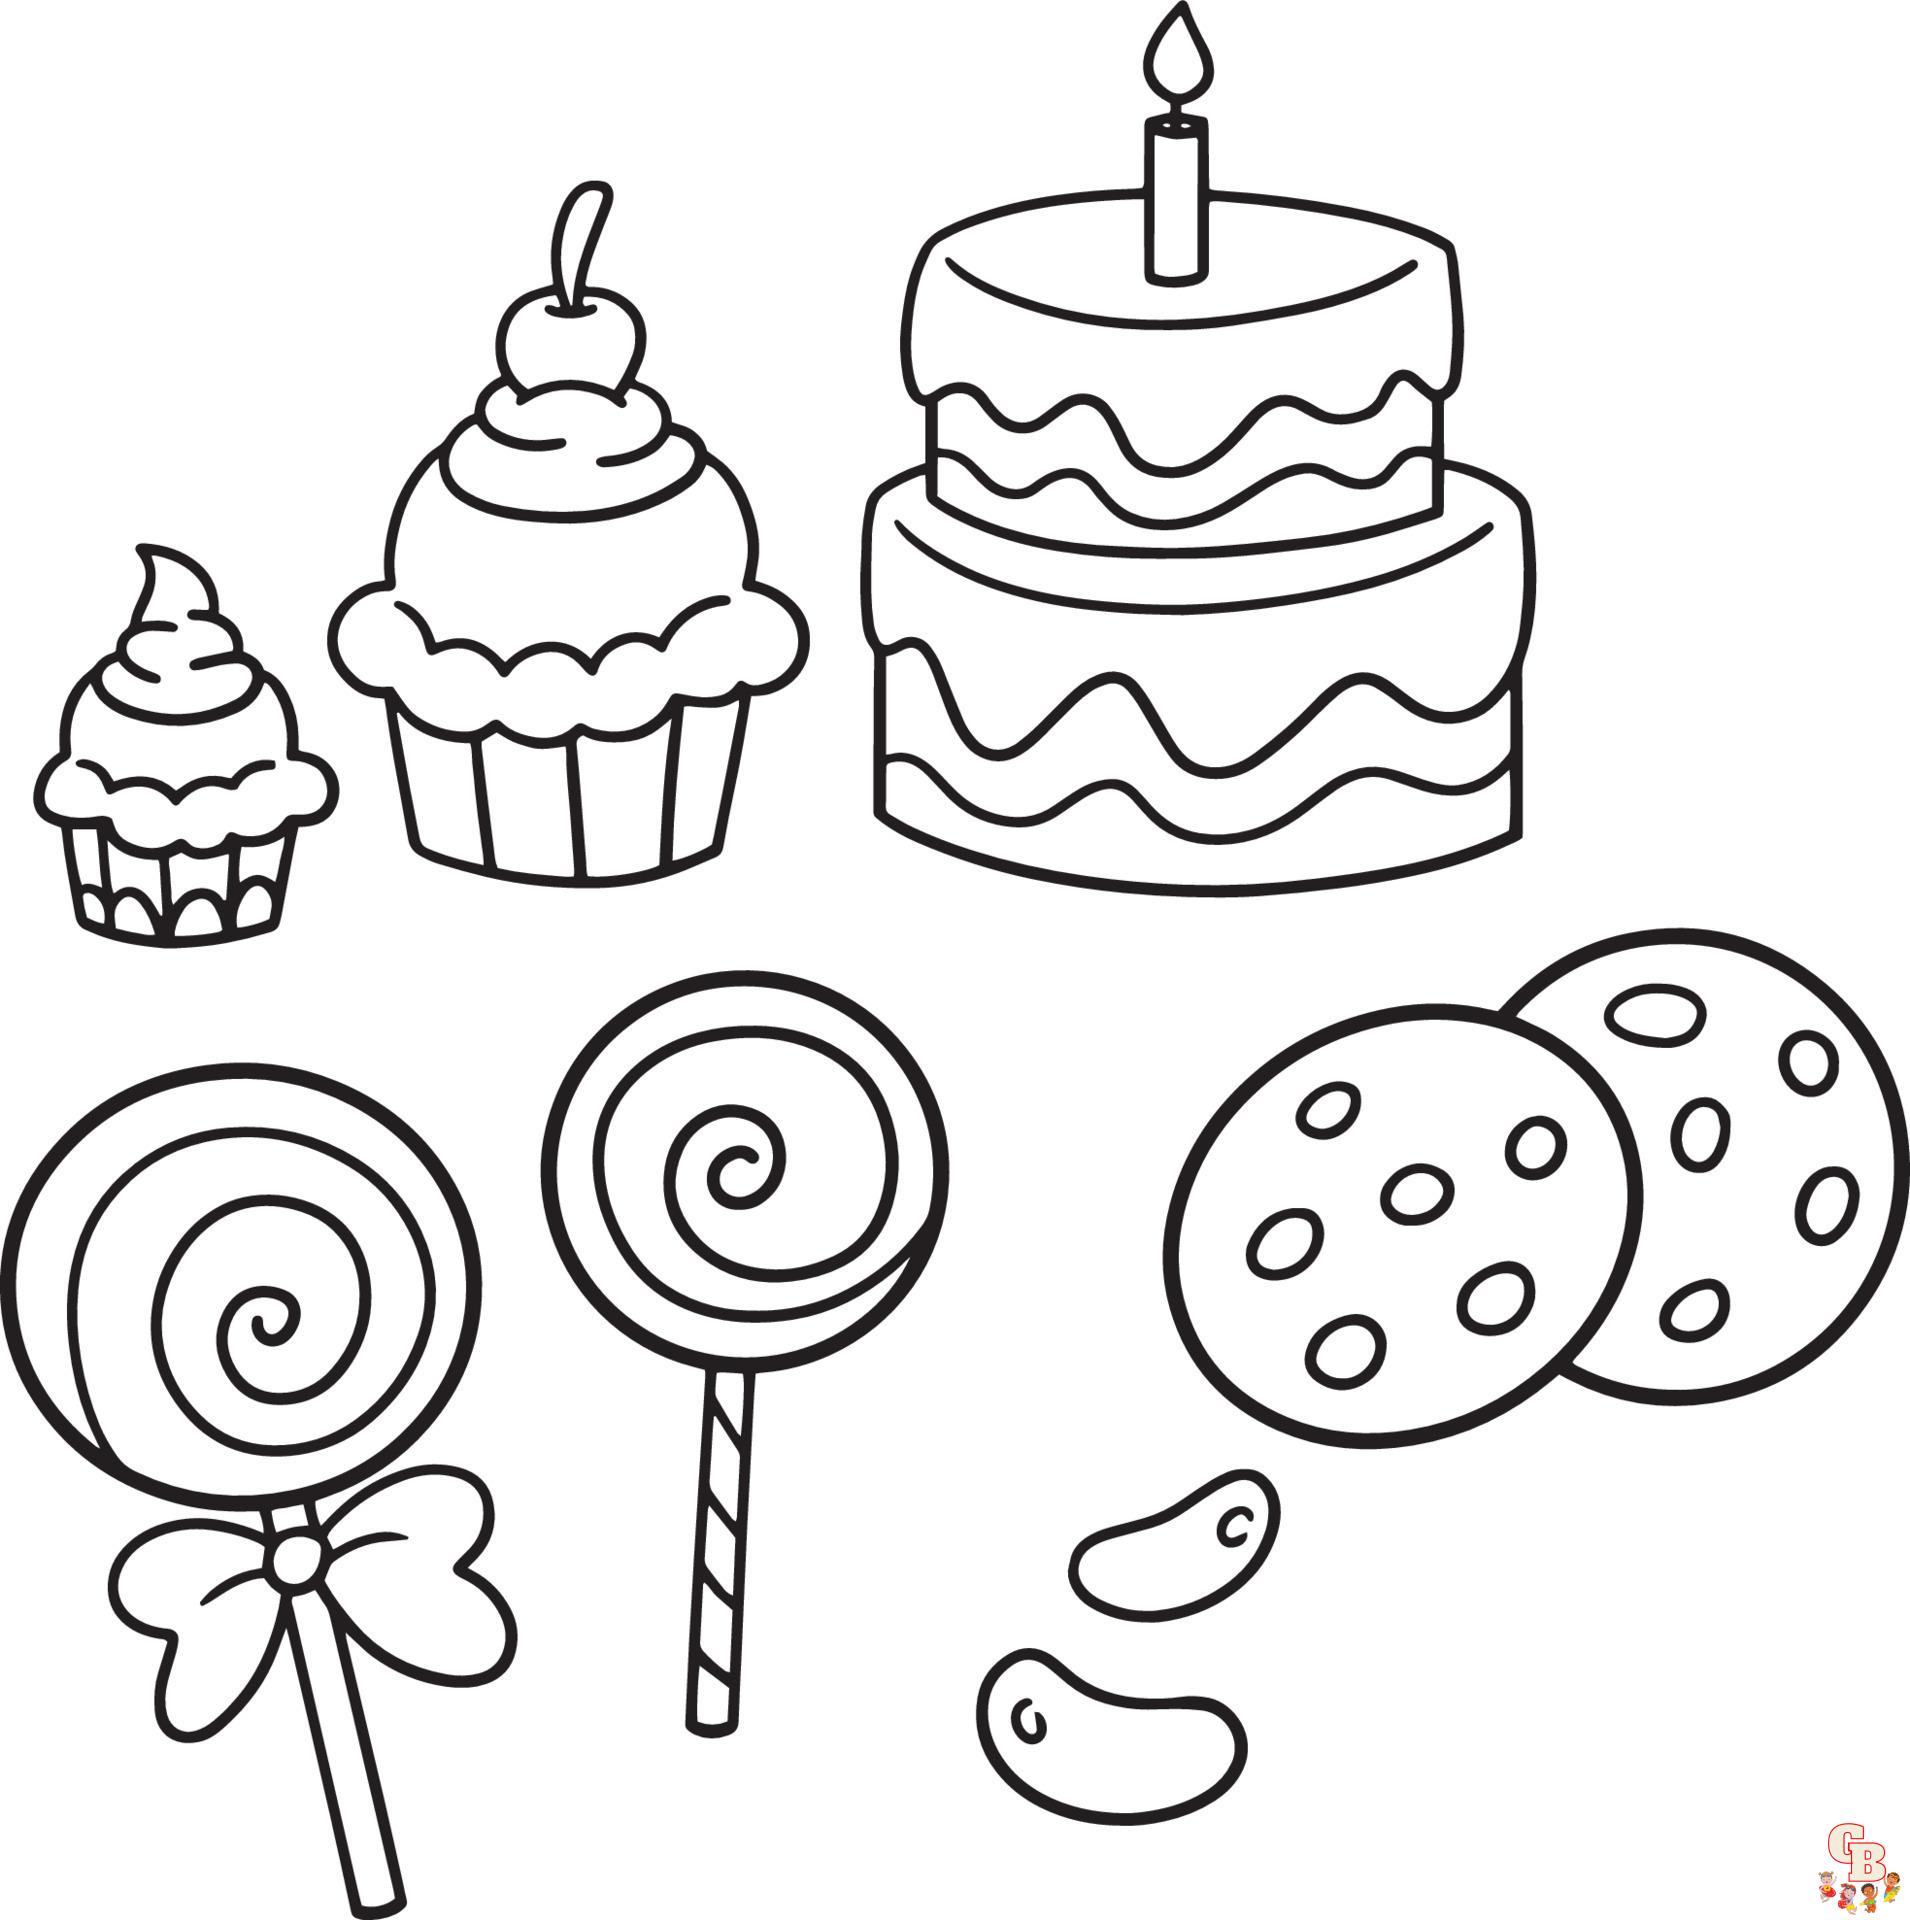 10 Leuke Kleurplaten van Taarten en Cupcakes om In te Kleuren